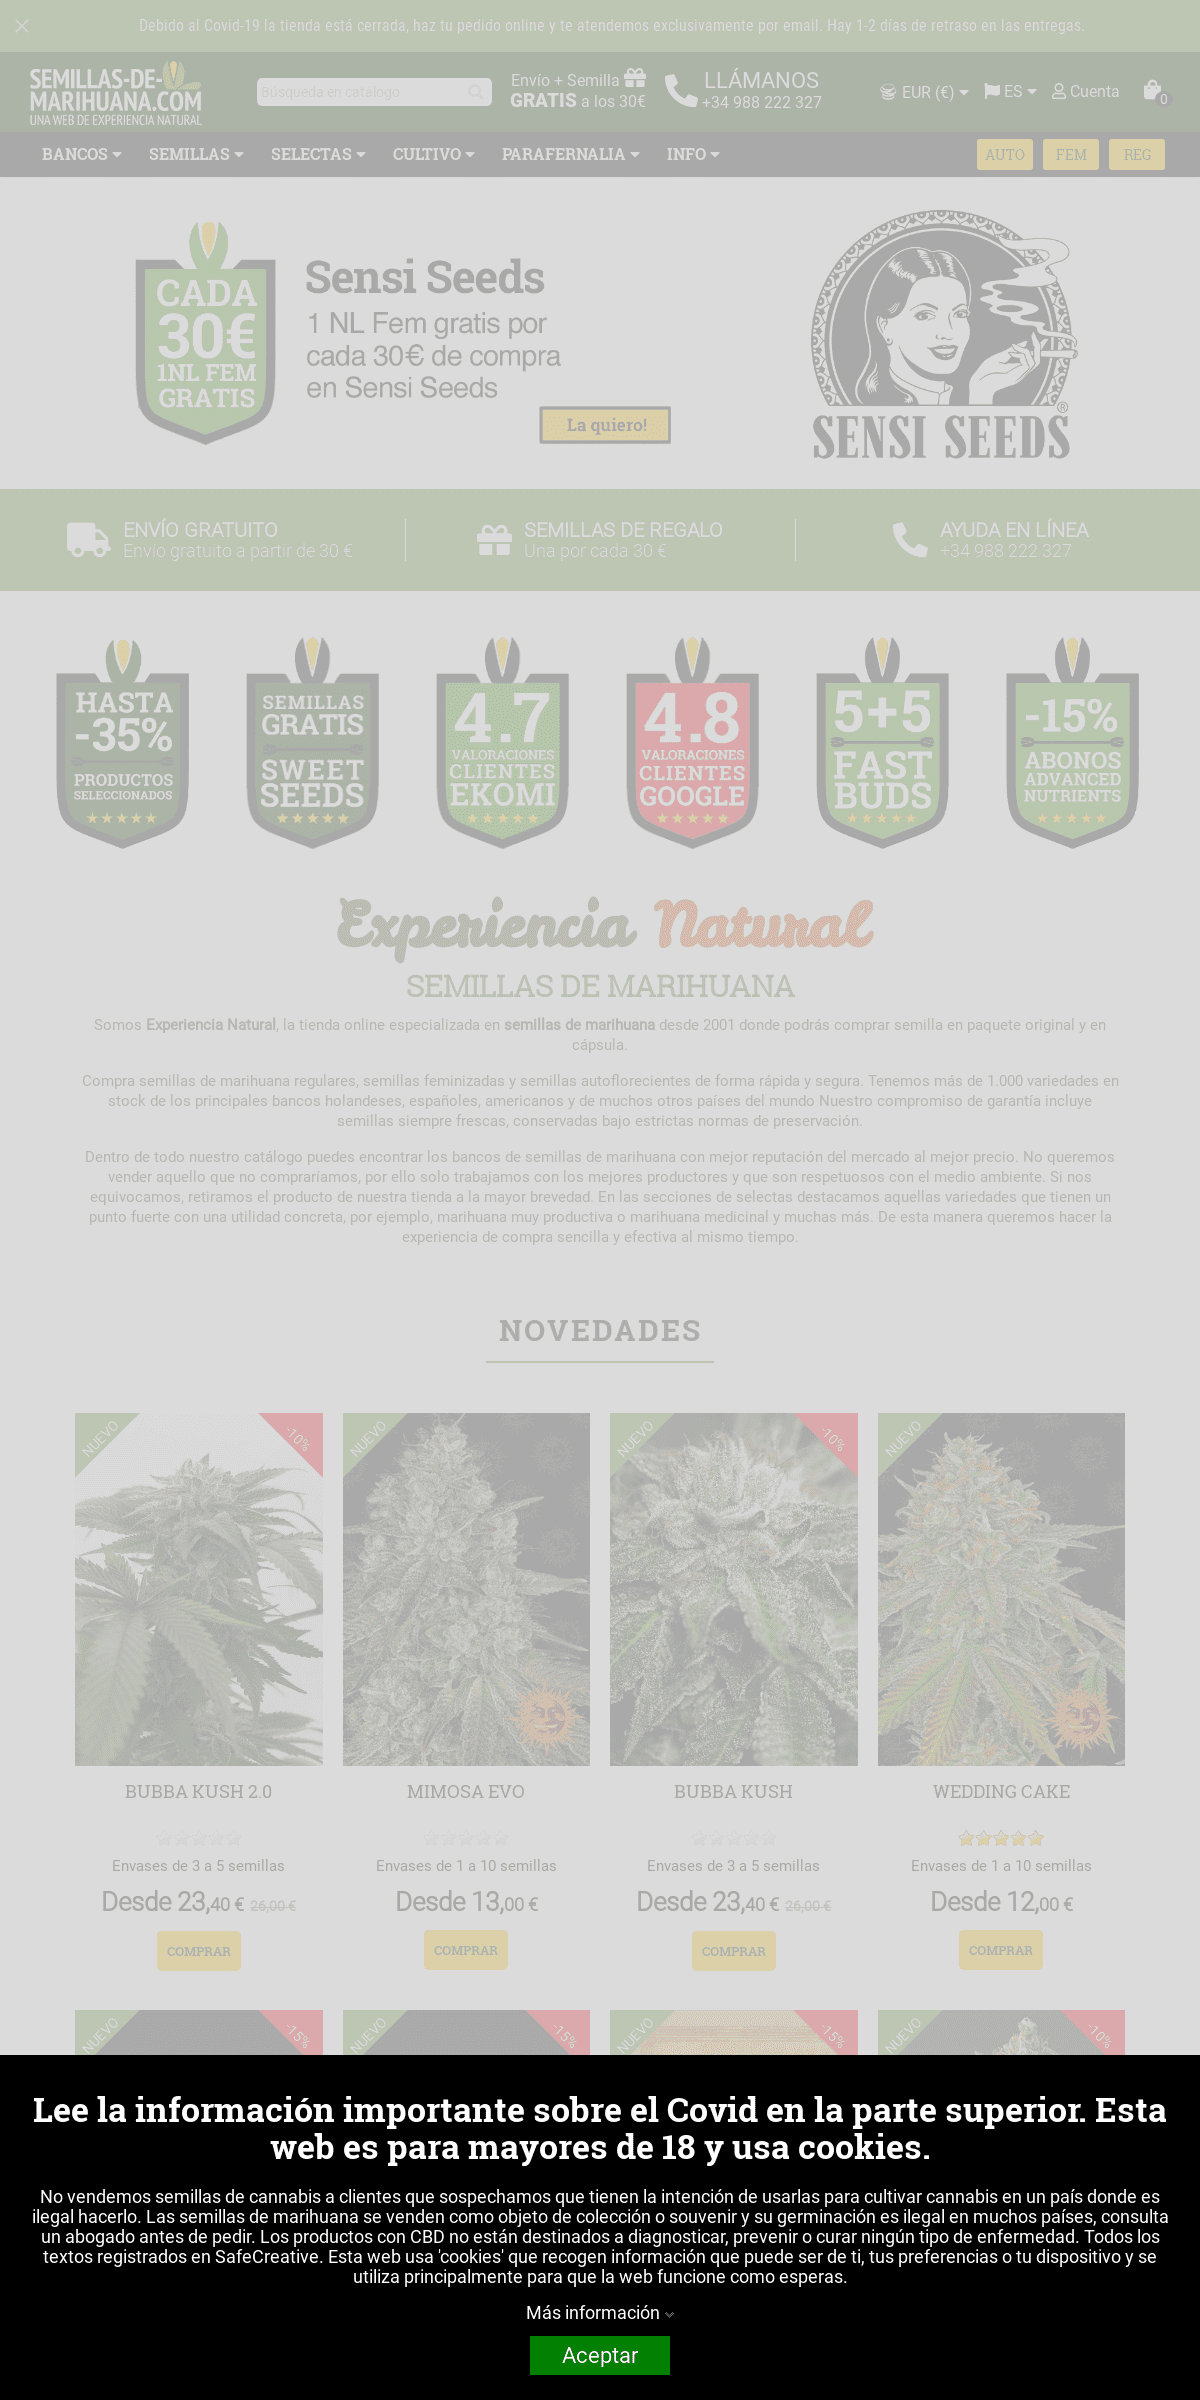 A complete backup of semillas-de-marihuana.com